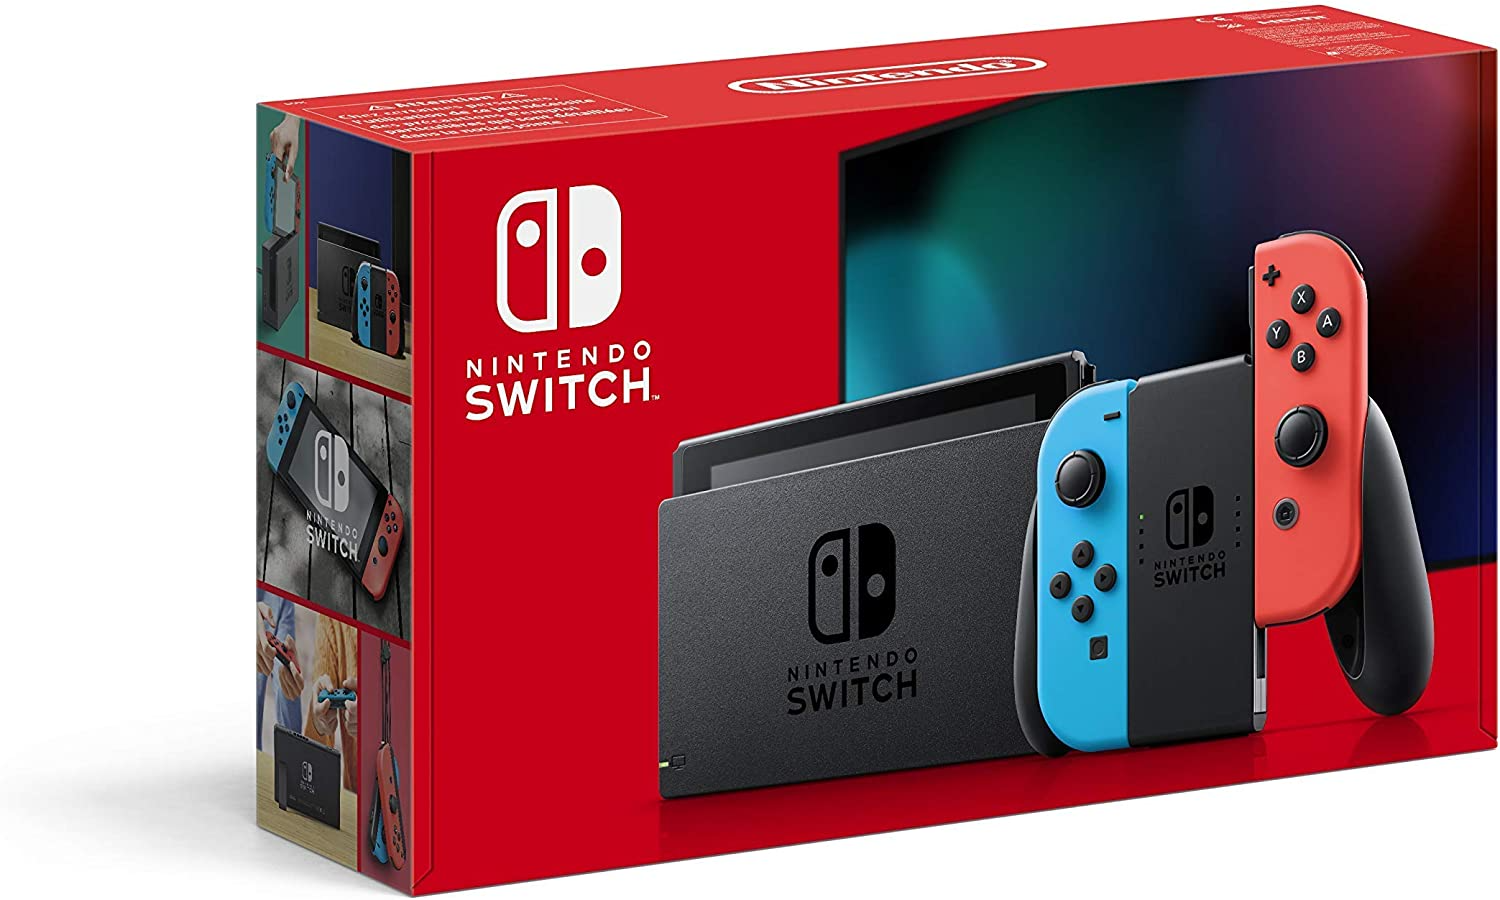 Nintendo Switch 2 kopen tijdens black friday vergelijk hier